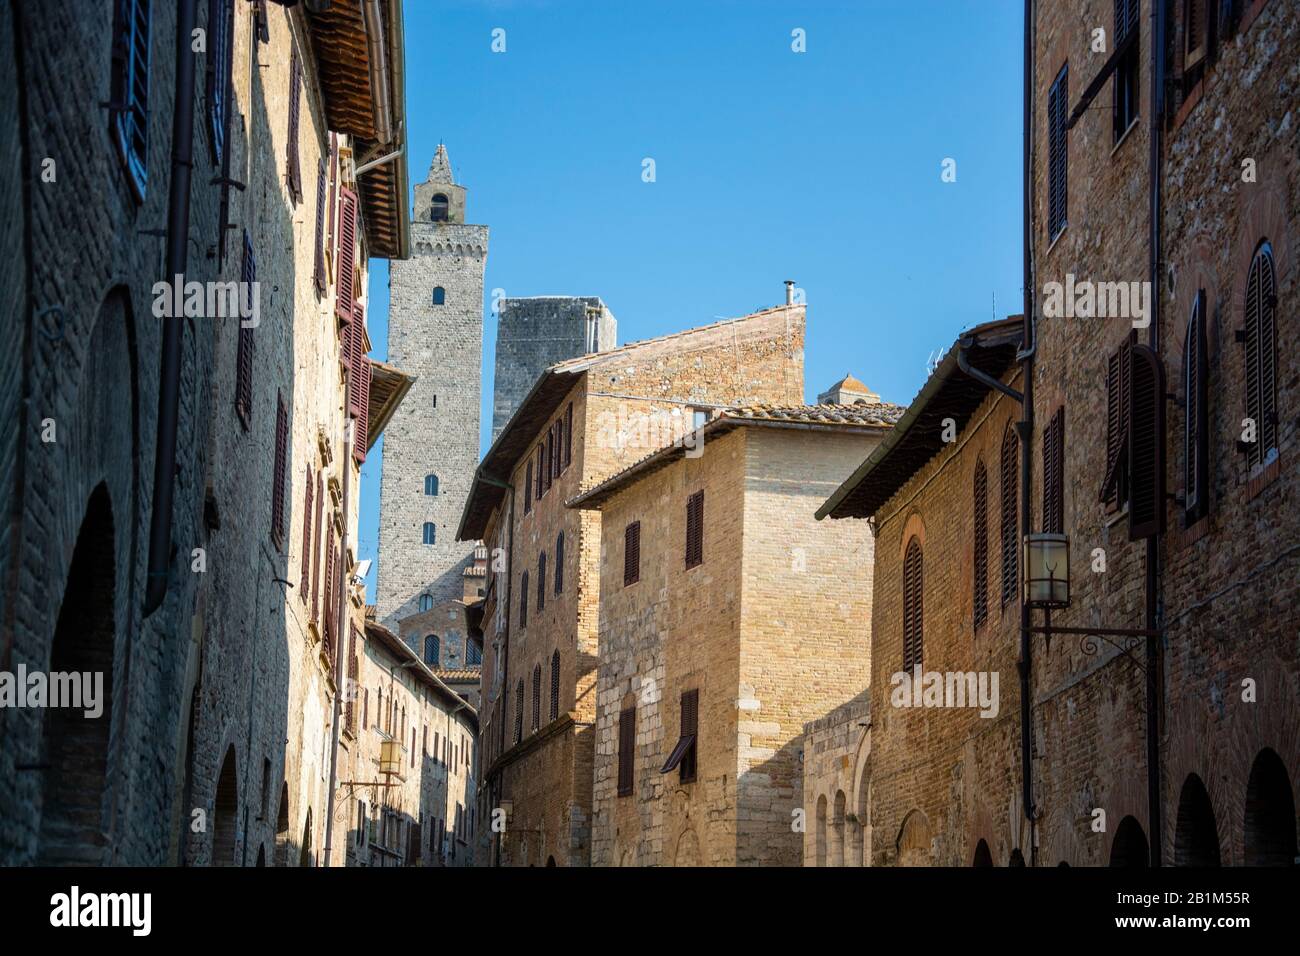 San Gimignano ist eine italienische Kleinstadt in der Provinz Siena, Toskana, mit einem mittelalterlichen Stadtkern und wird auch "Mittelalterliches M Stockfoto